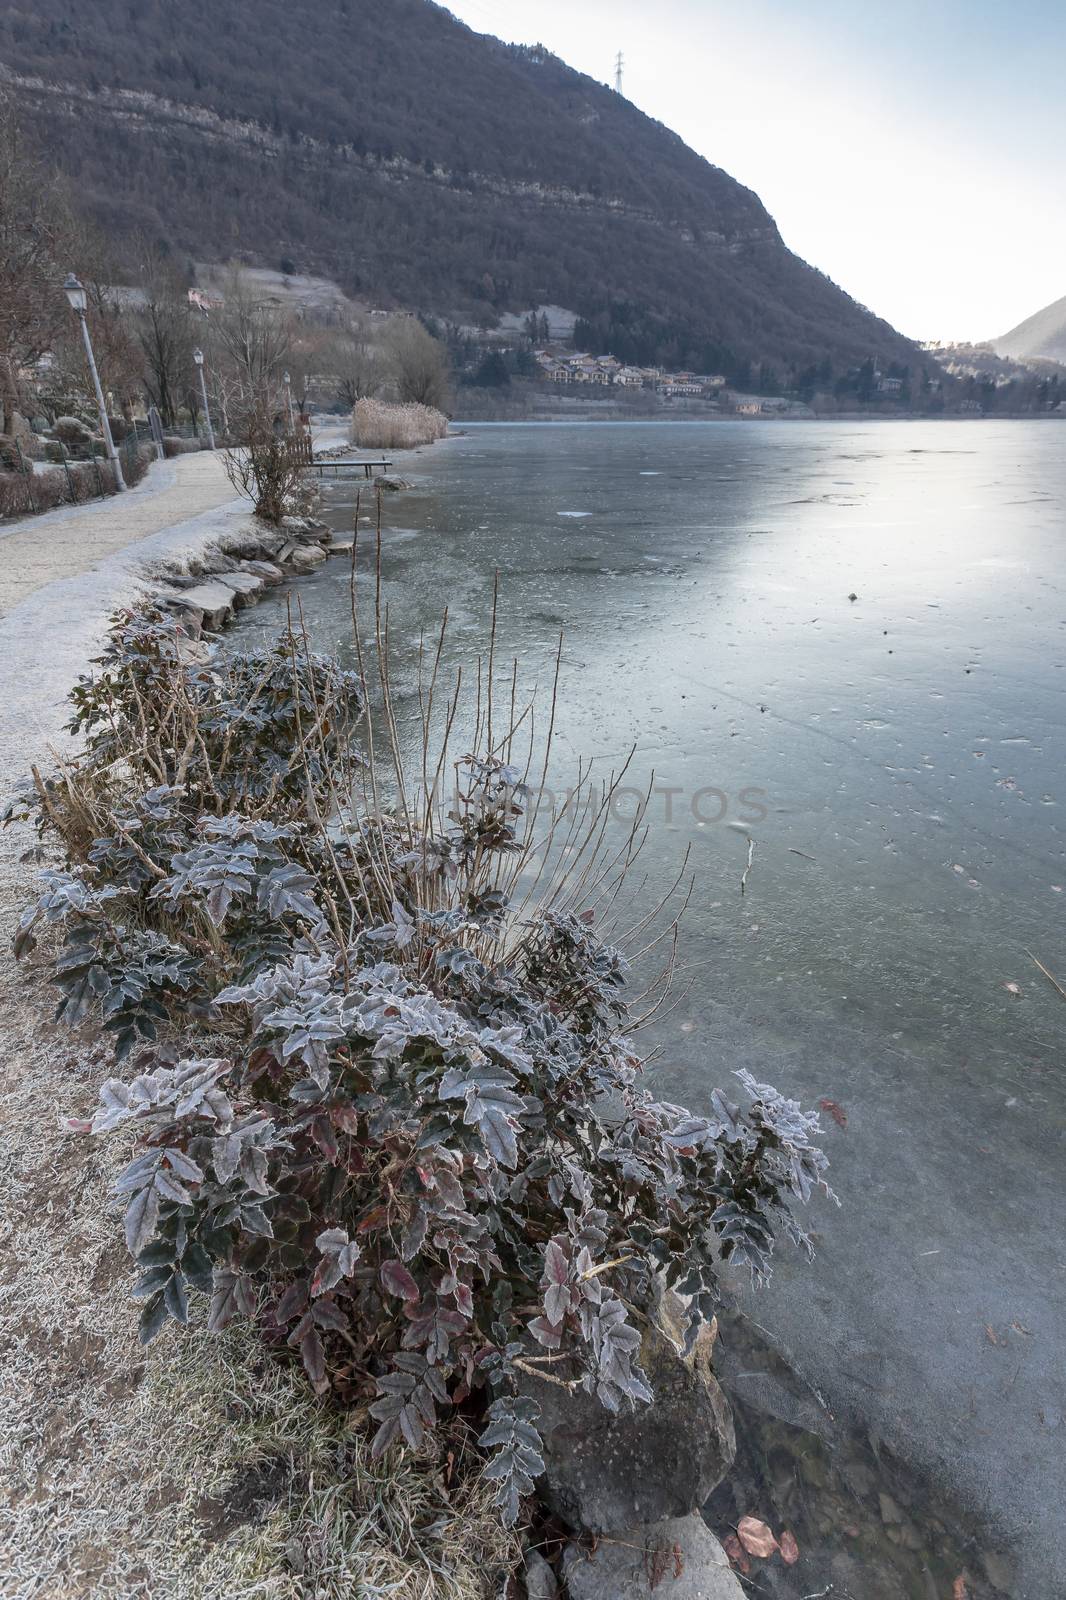 Endine lake completely frozen. Endine Gaiano (BG) ITALY - January 22, 2019.